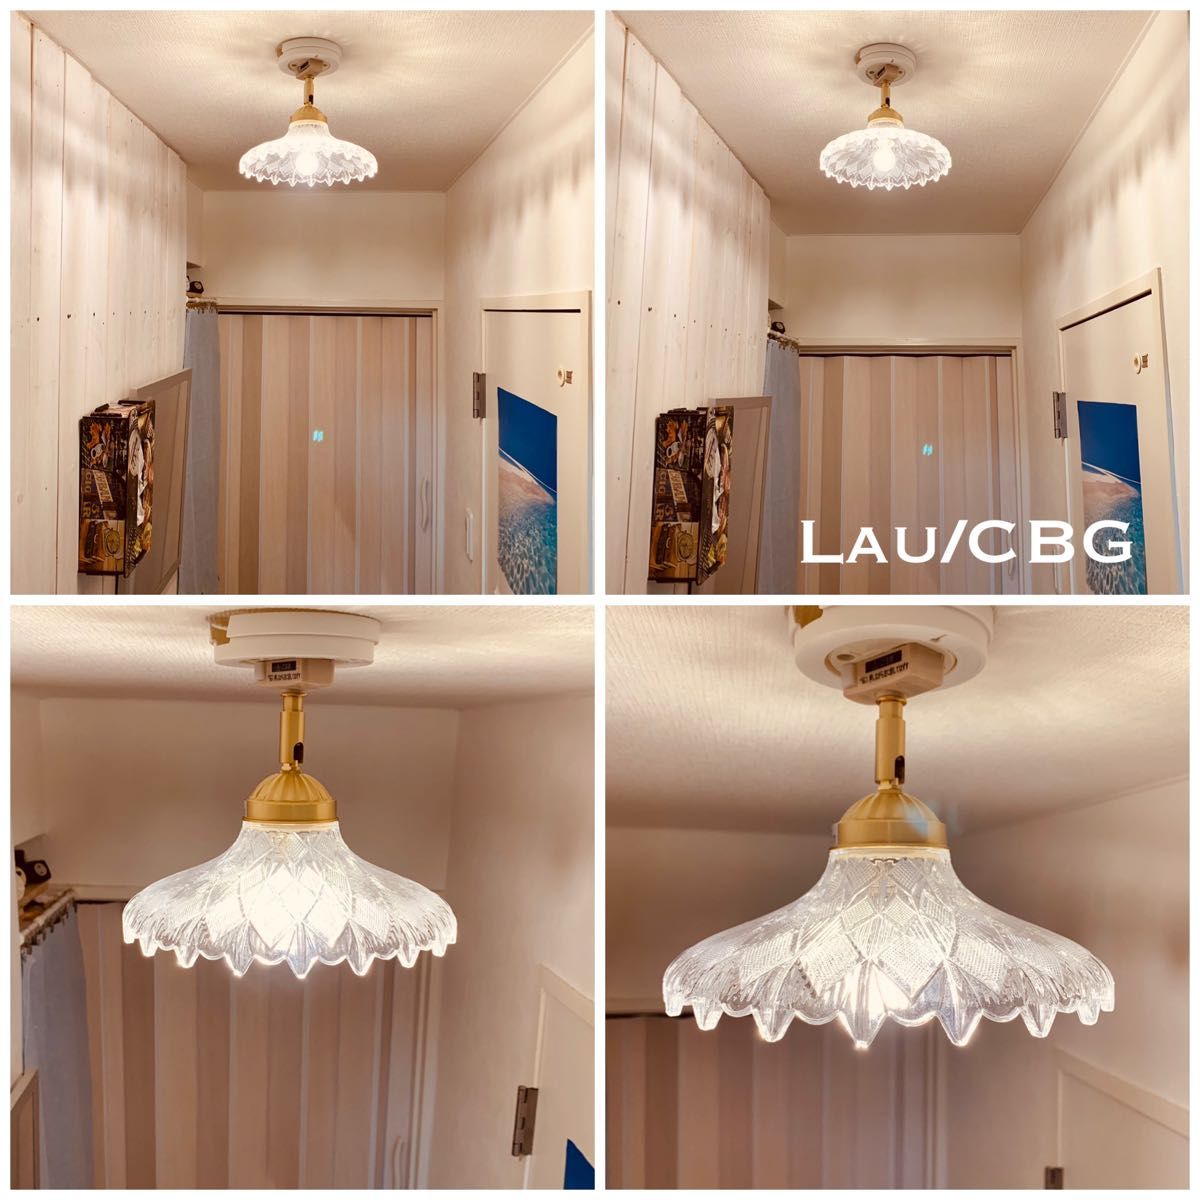 天井照明 Lau/CBG シーリングライト ガラス製 ランプシェード E17磁器ソケット 角度自在器付真鋳器具